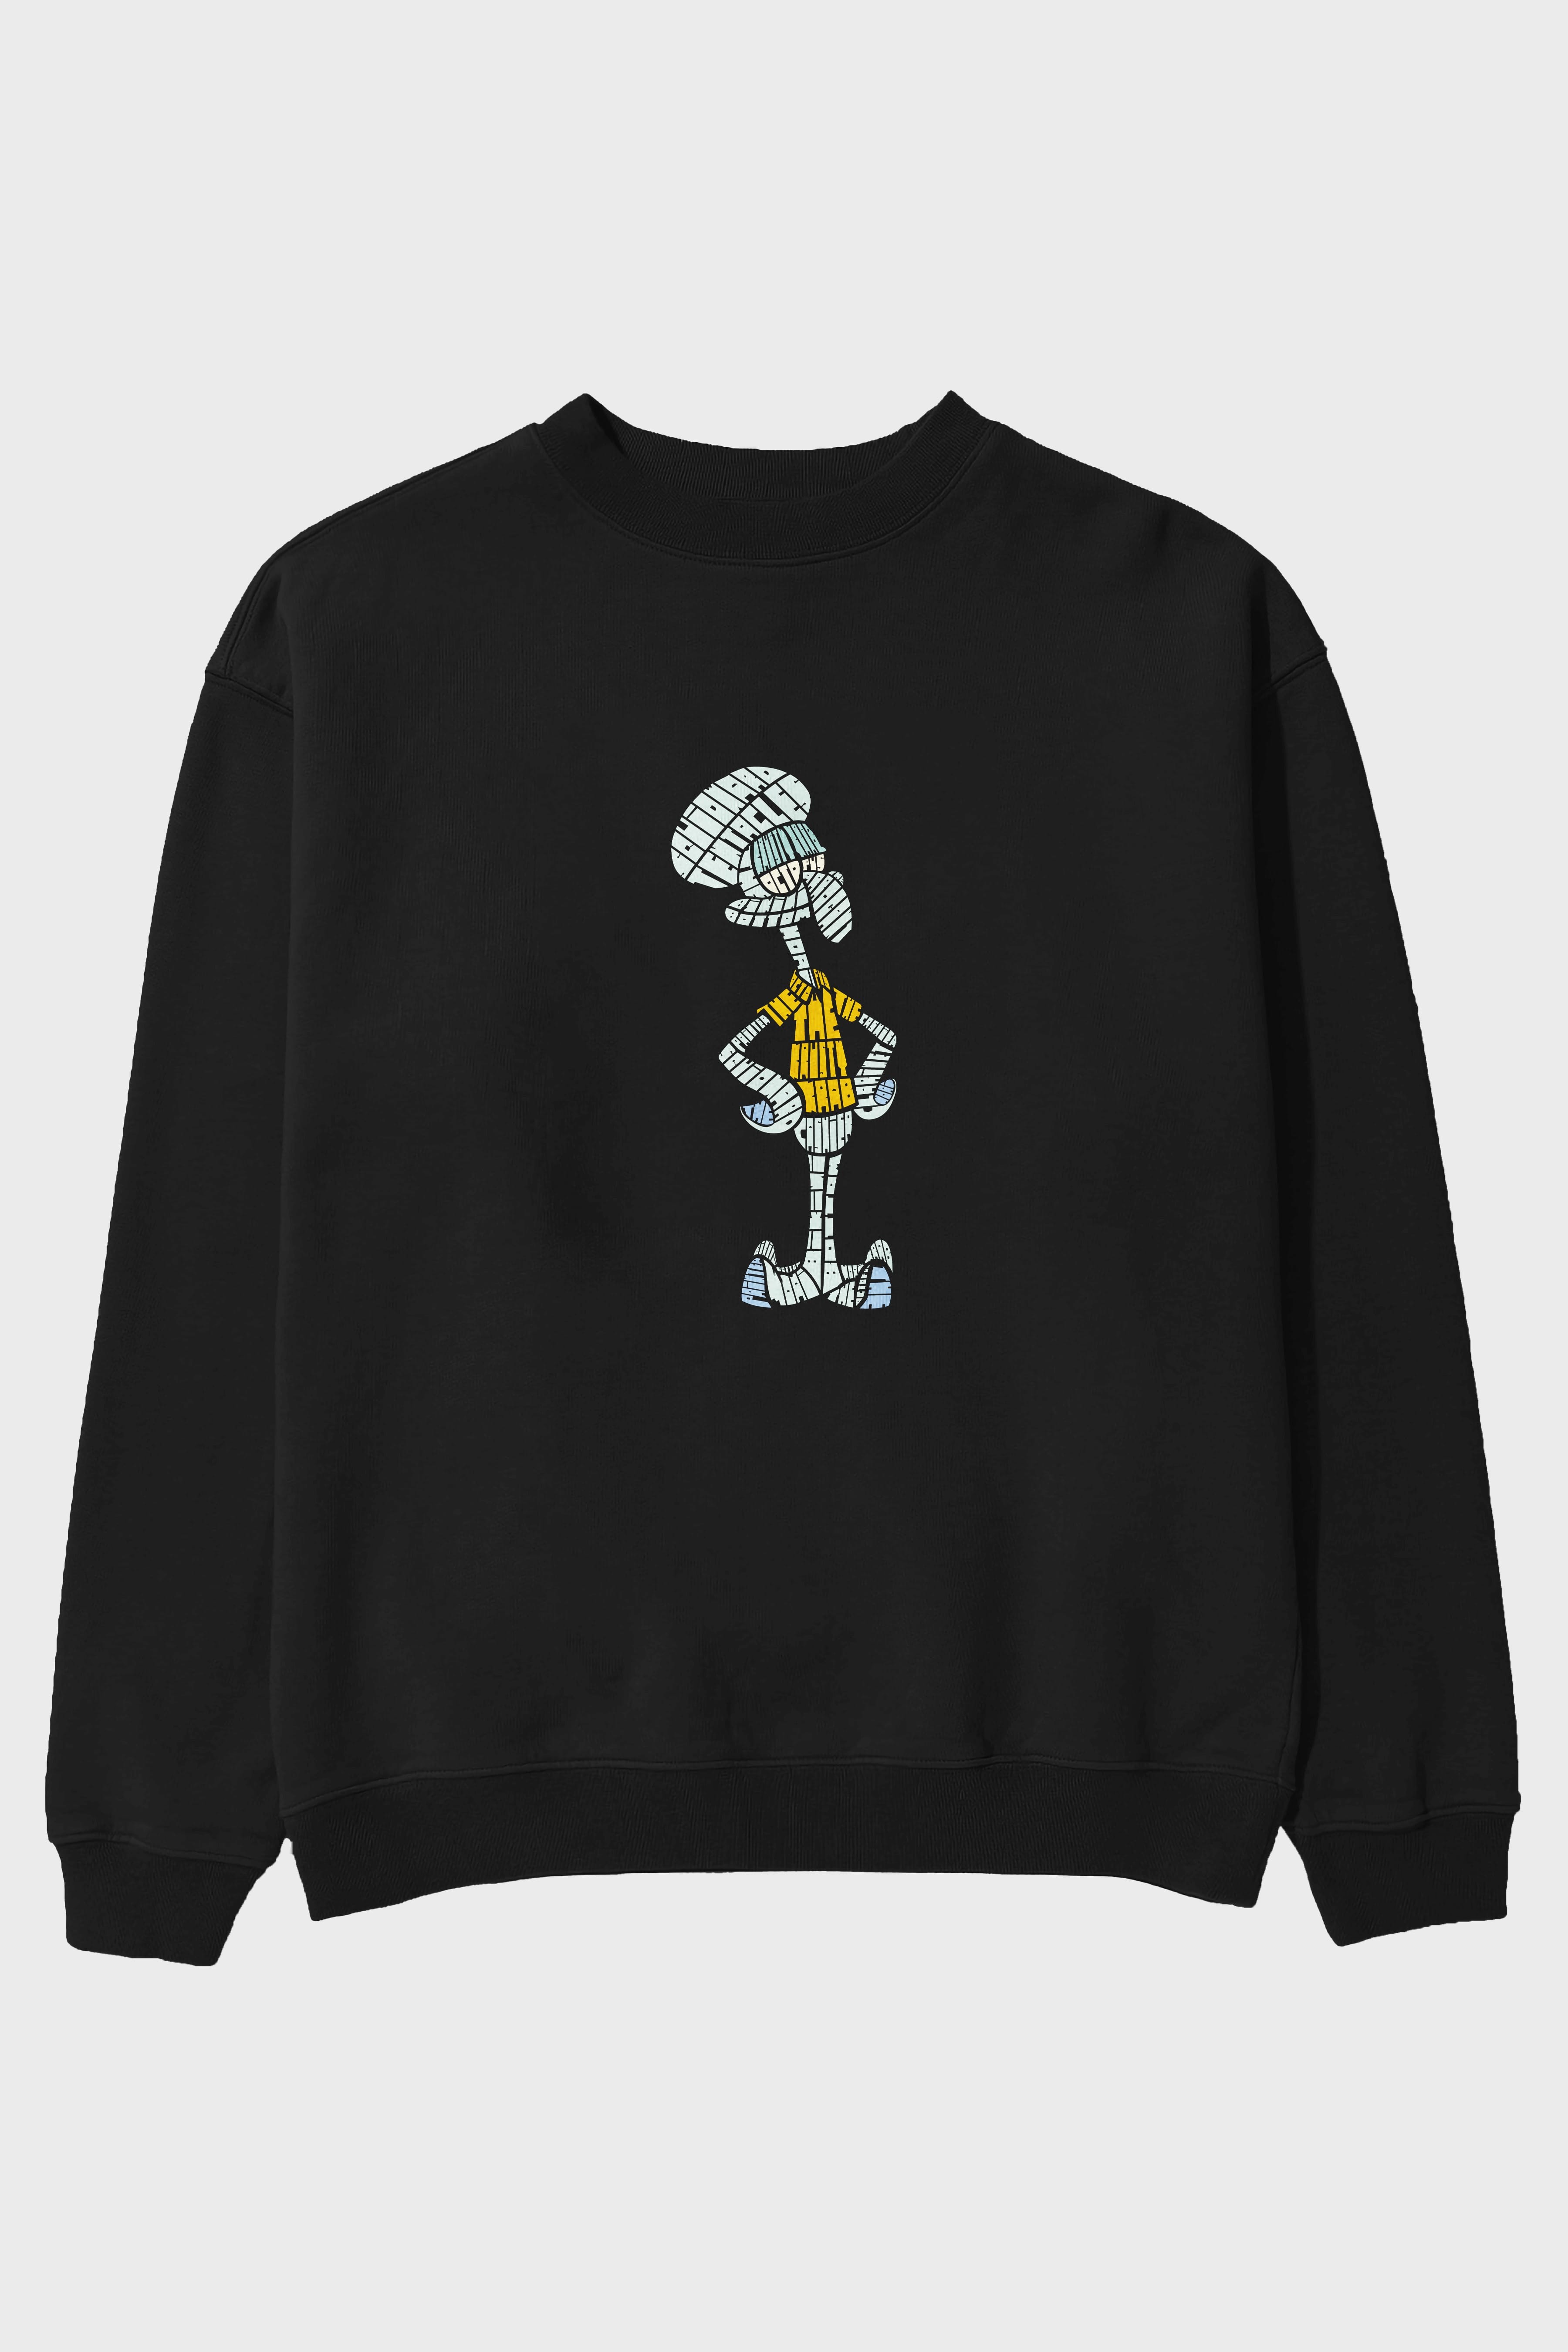 Squidward Ön Baskılı Oversize Sweatshirt Erkek Kadın Unisex